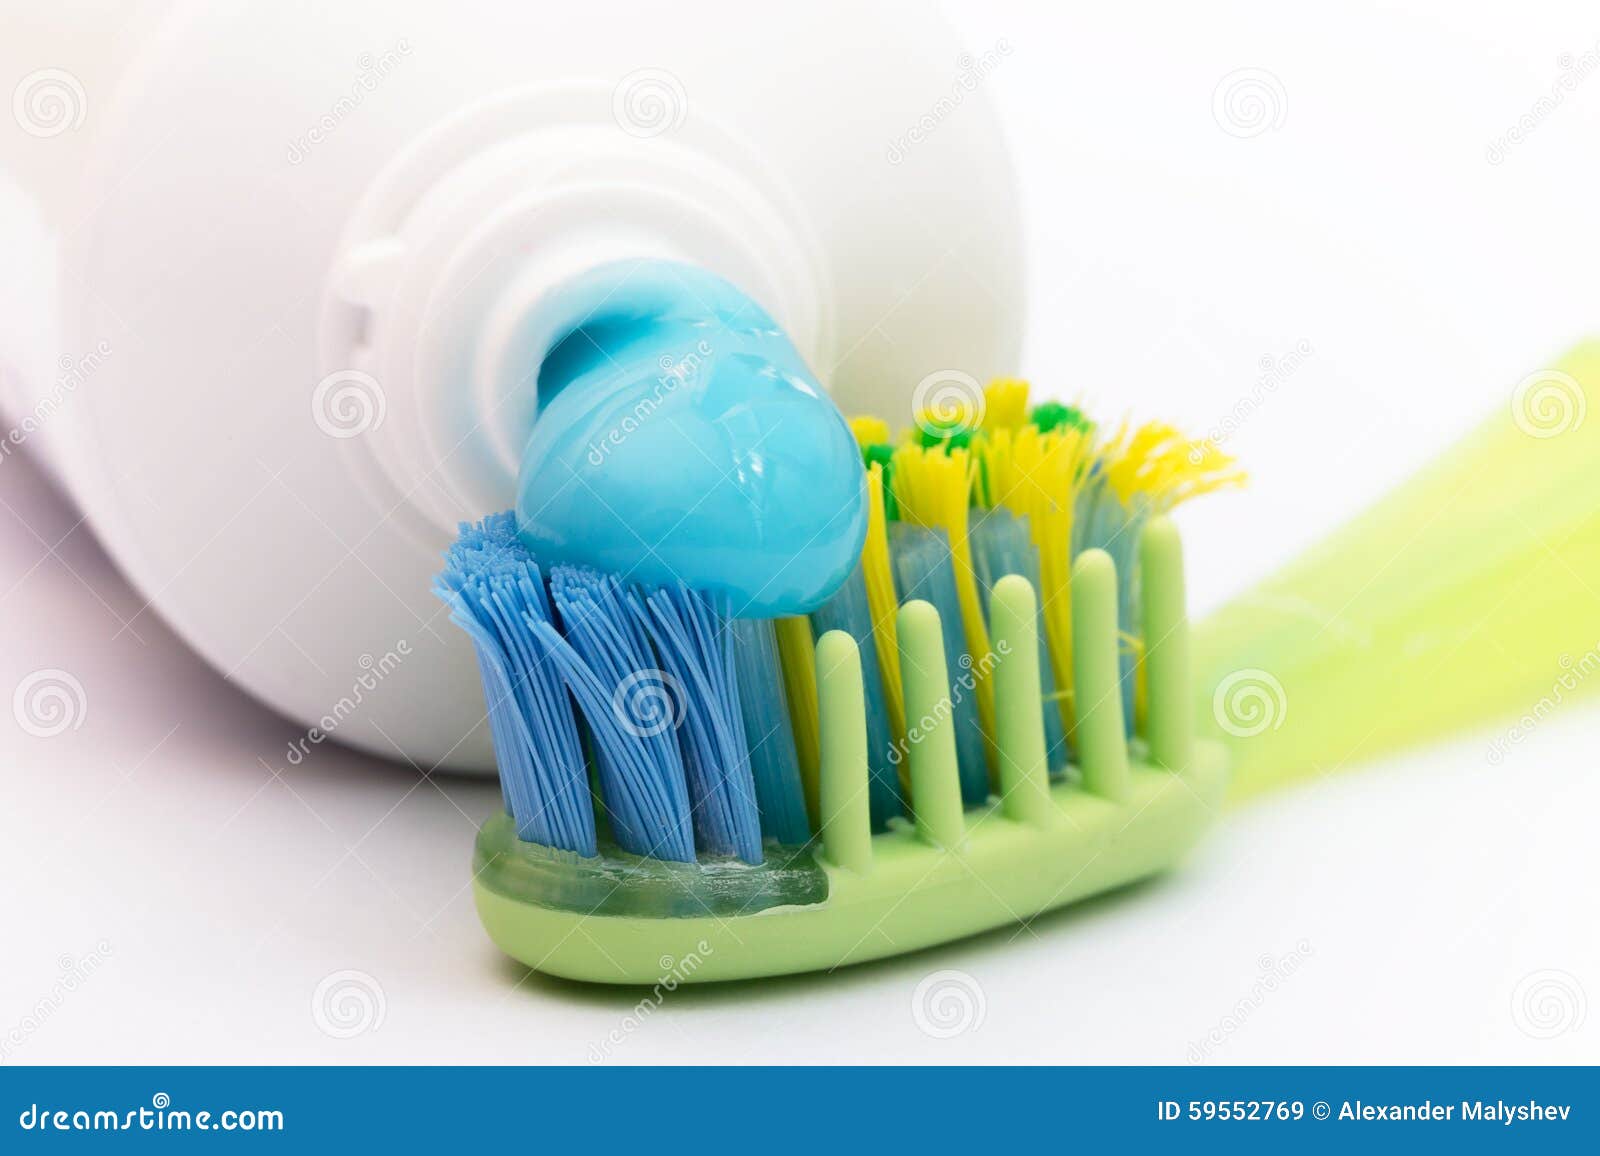 kruis Onderbreking Commissie De Blauwe Tandpasta Op Een Gekleurde Tandenborstel Stock Afbeelding - Image  of sluit, geneeskunde: 59552769